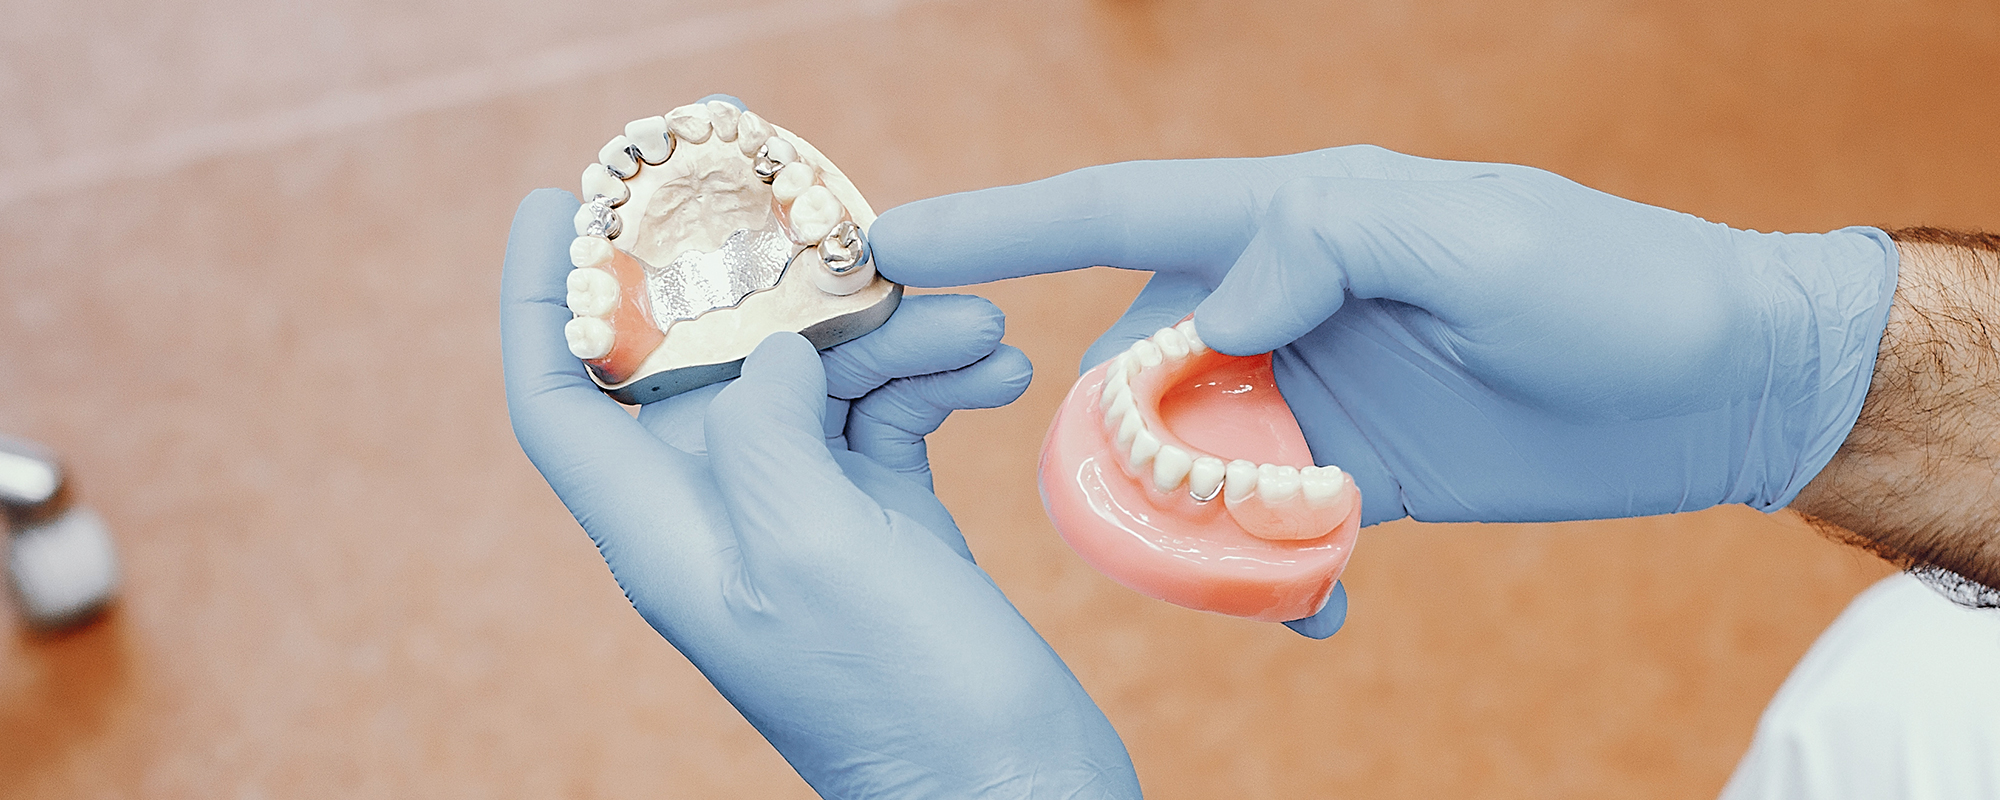 Registros necesarios para el diagnóstico y tratamiento de ortodoncia.